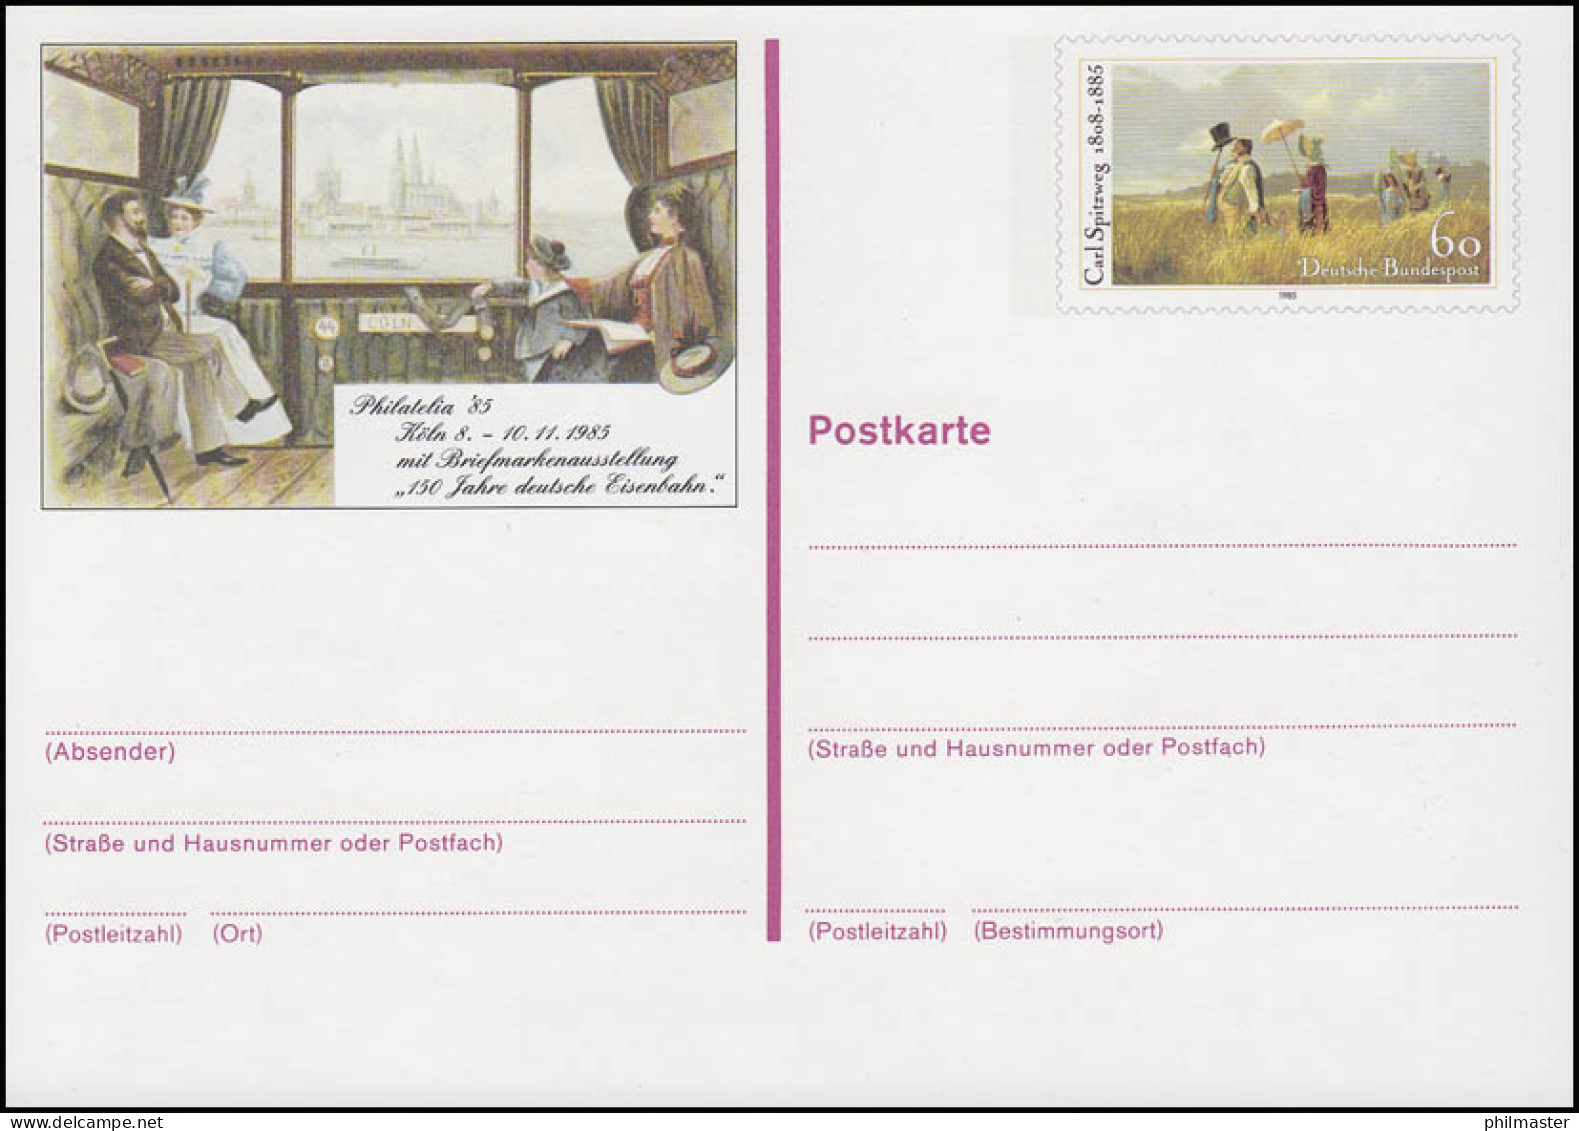 PSo 11 PHILATELIA Köln 1985, ** - Postcards - Mint